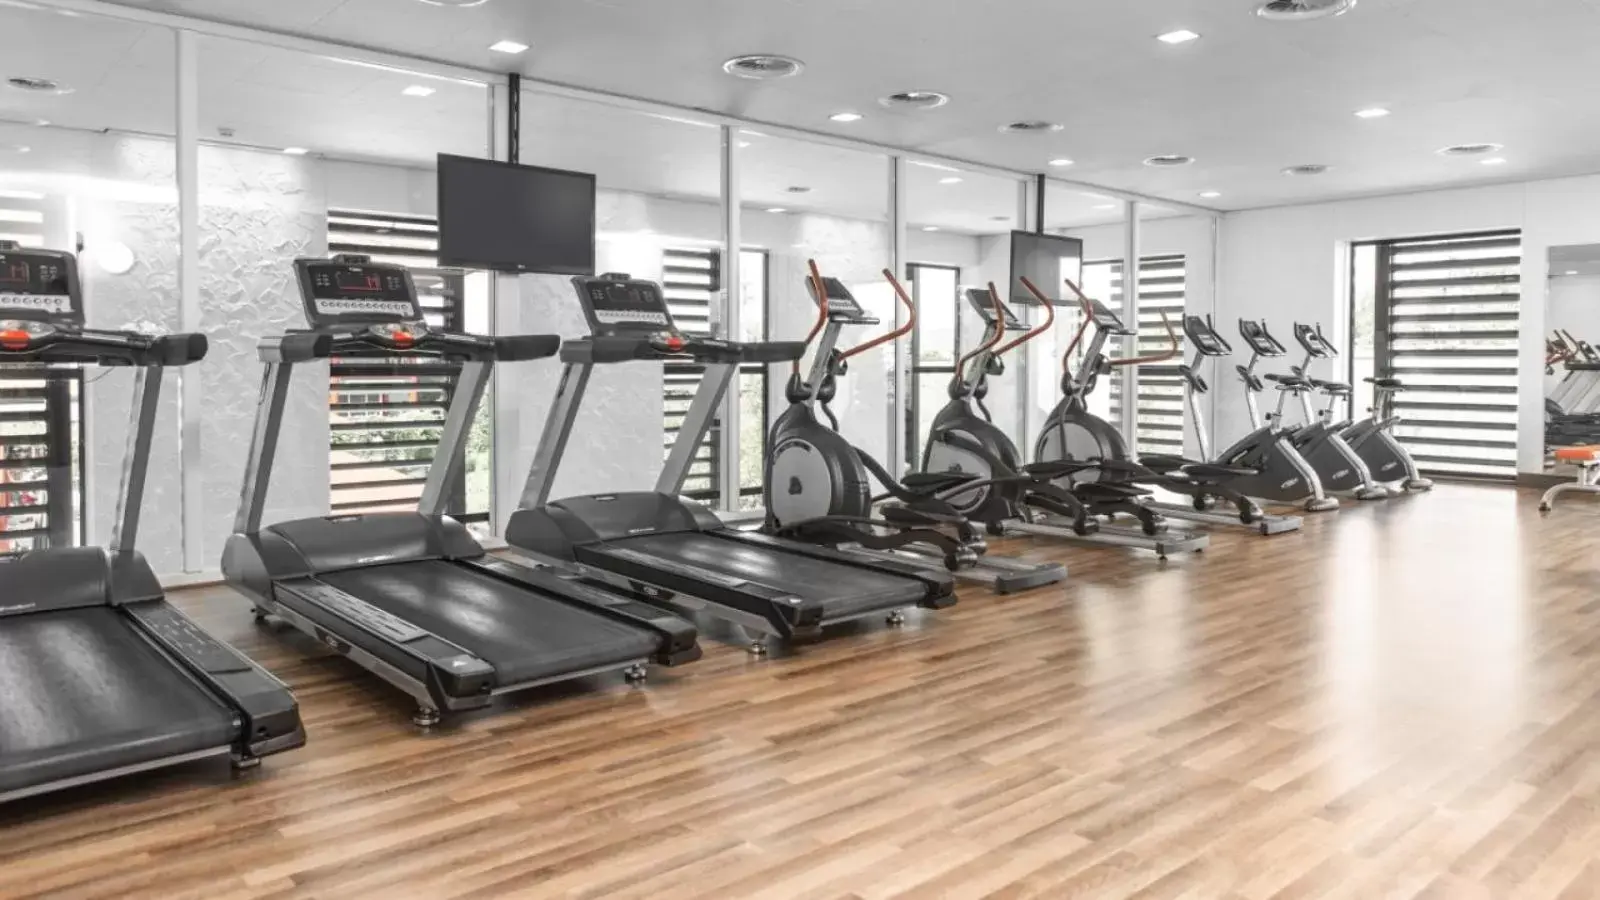 Fitness centre/facilities, Fitness Center/Facilities in Van der Valk Hotel Breukelen